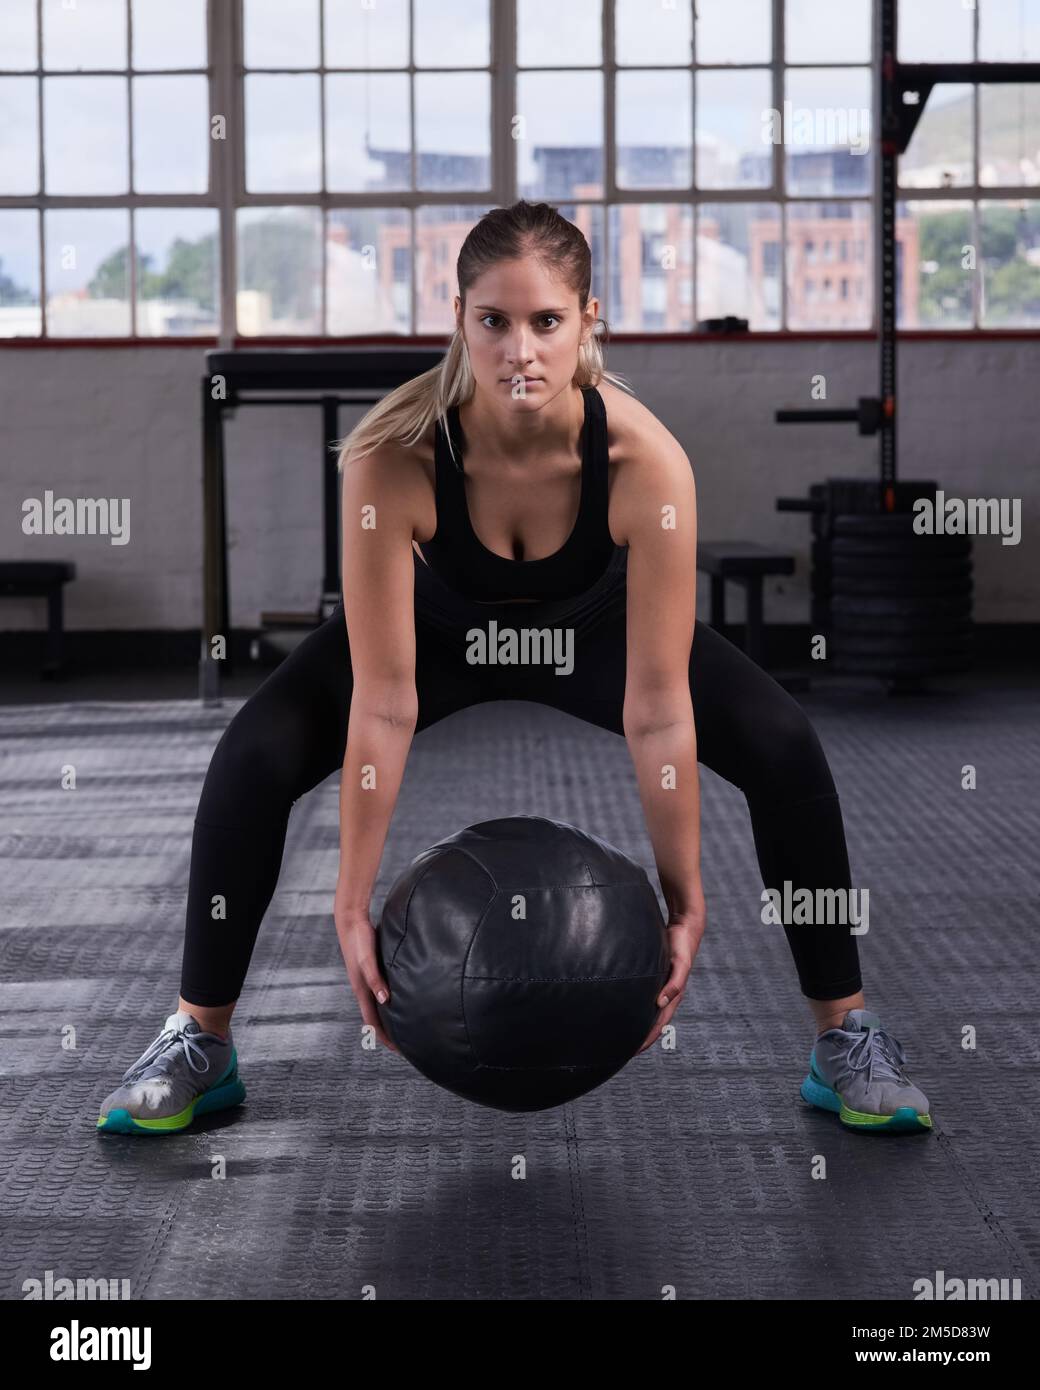 Piccole modifiche si aggiungono a grandi cambiamenti nel tempo. una giovane donna che usa una palla medica in una routine di esercizio fisico. Foto Stock